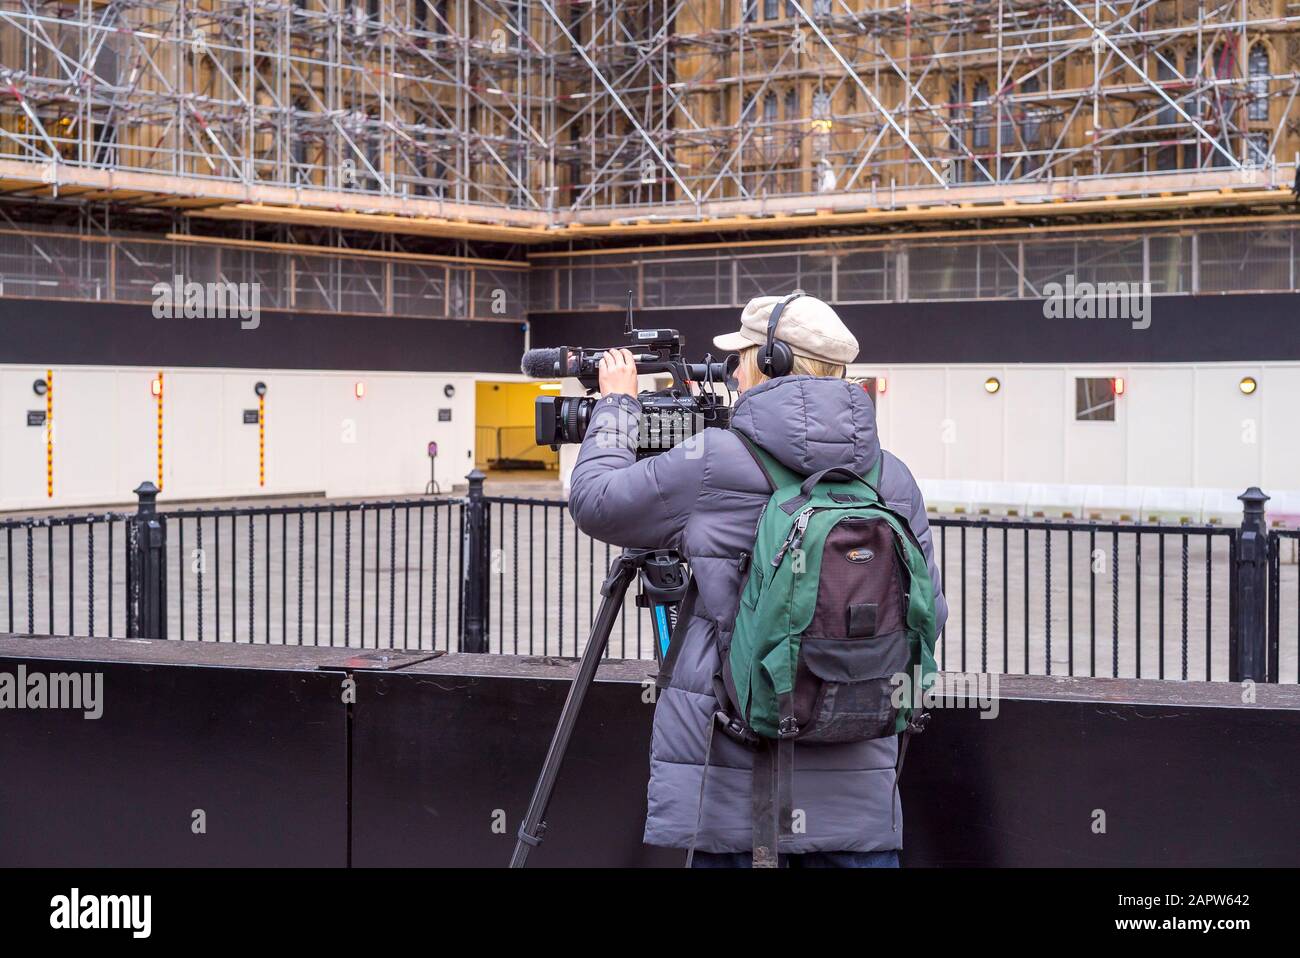 Royaume-Uni professions: Camérawoman isolé filmant en dehors des Chambres du Parlement, Westminster Royaume-Uni, recouvert d'échafaudages. Femme dans le rôle masculin. Les femmes qui travaillent. Banque D'Images